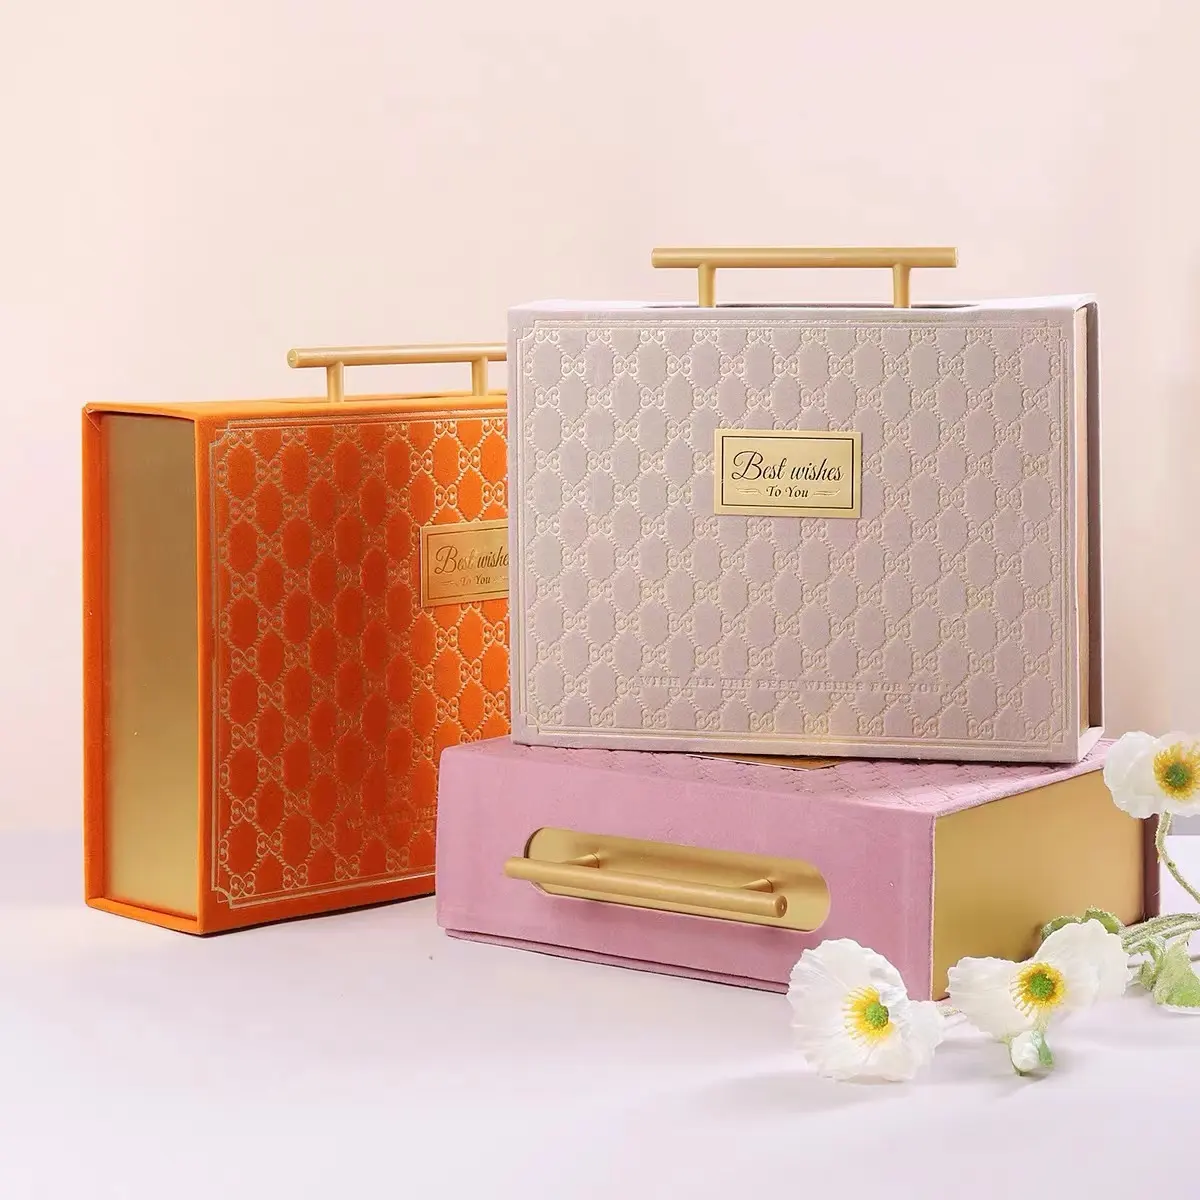 कस्टम लोगो मुफ्त mockup गत्ता सूटकेस उपहार बॉक्स संभाल के साथ चुंबकीय बंद फ्लिप गुलाबी/बेज रंगीन कागज बॉक्स फ्लैट जहाज करने के लिए